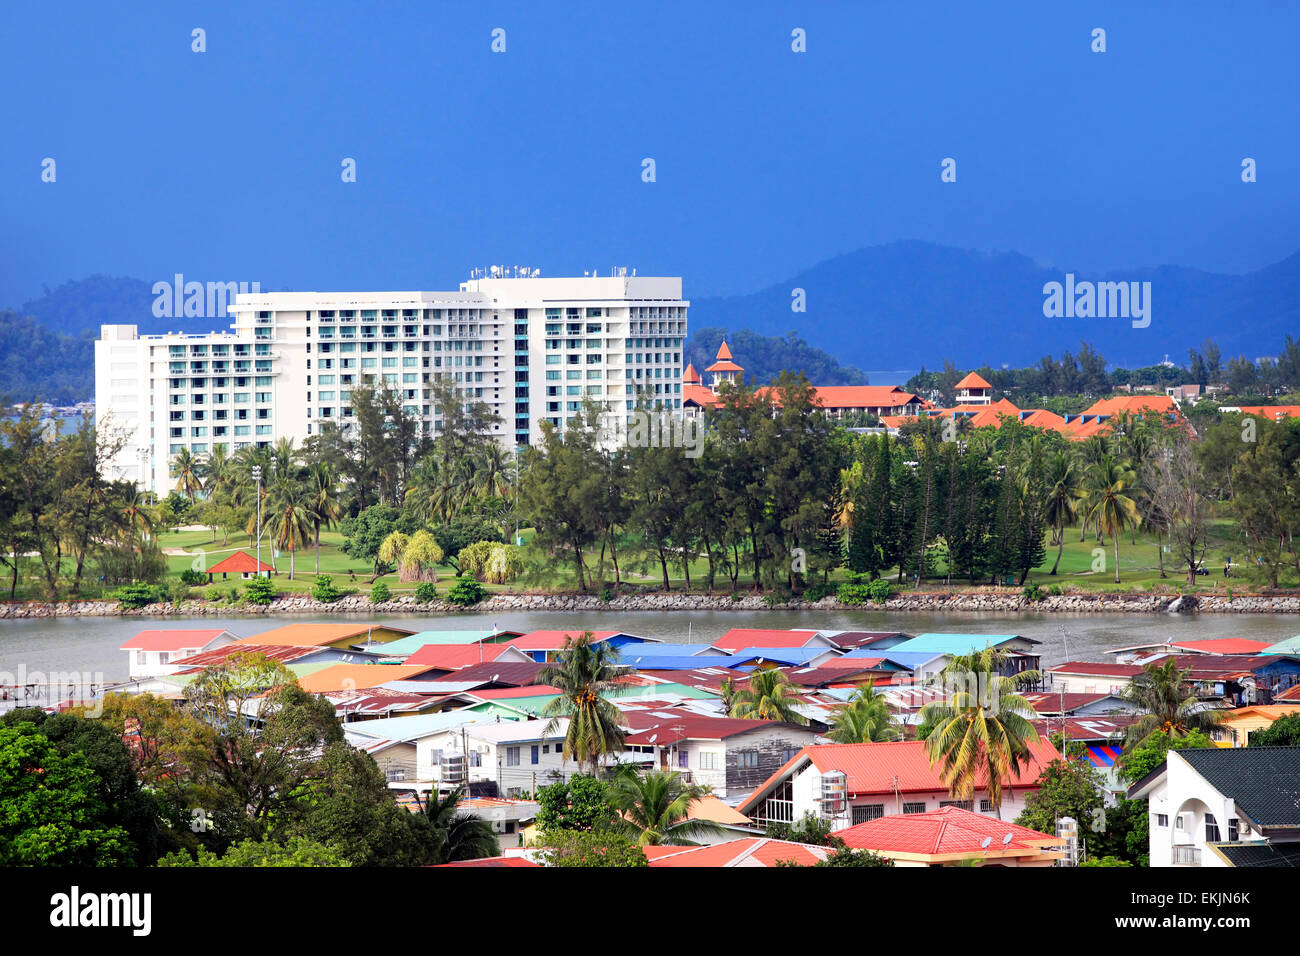 La ville de Kota Kinabalu. La ville de Kota Kinabalu est la capitale de l'état de Sabah, situé dans l'île de Bornéo, la Malaisie orientale. Banque D'Images